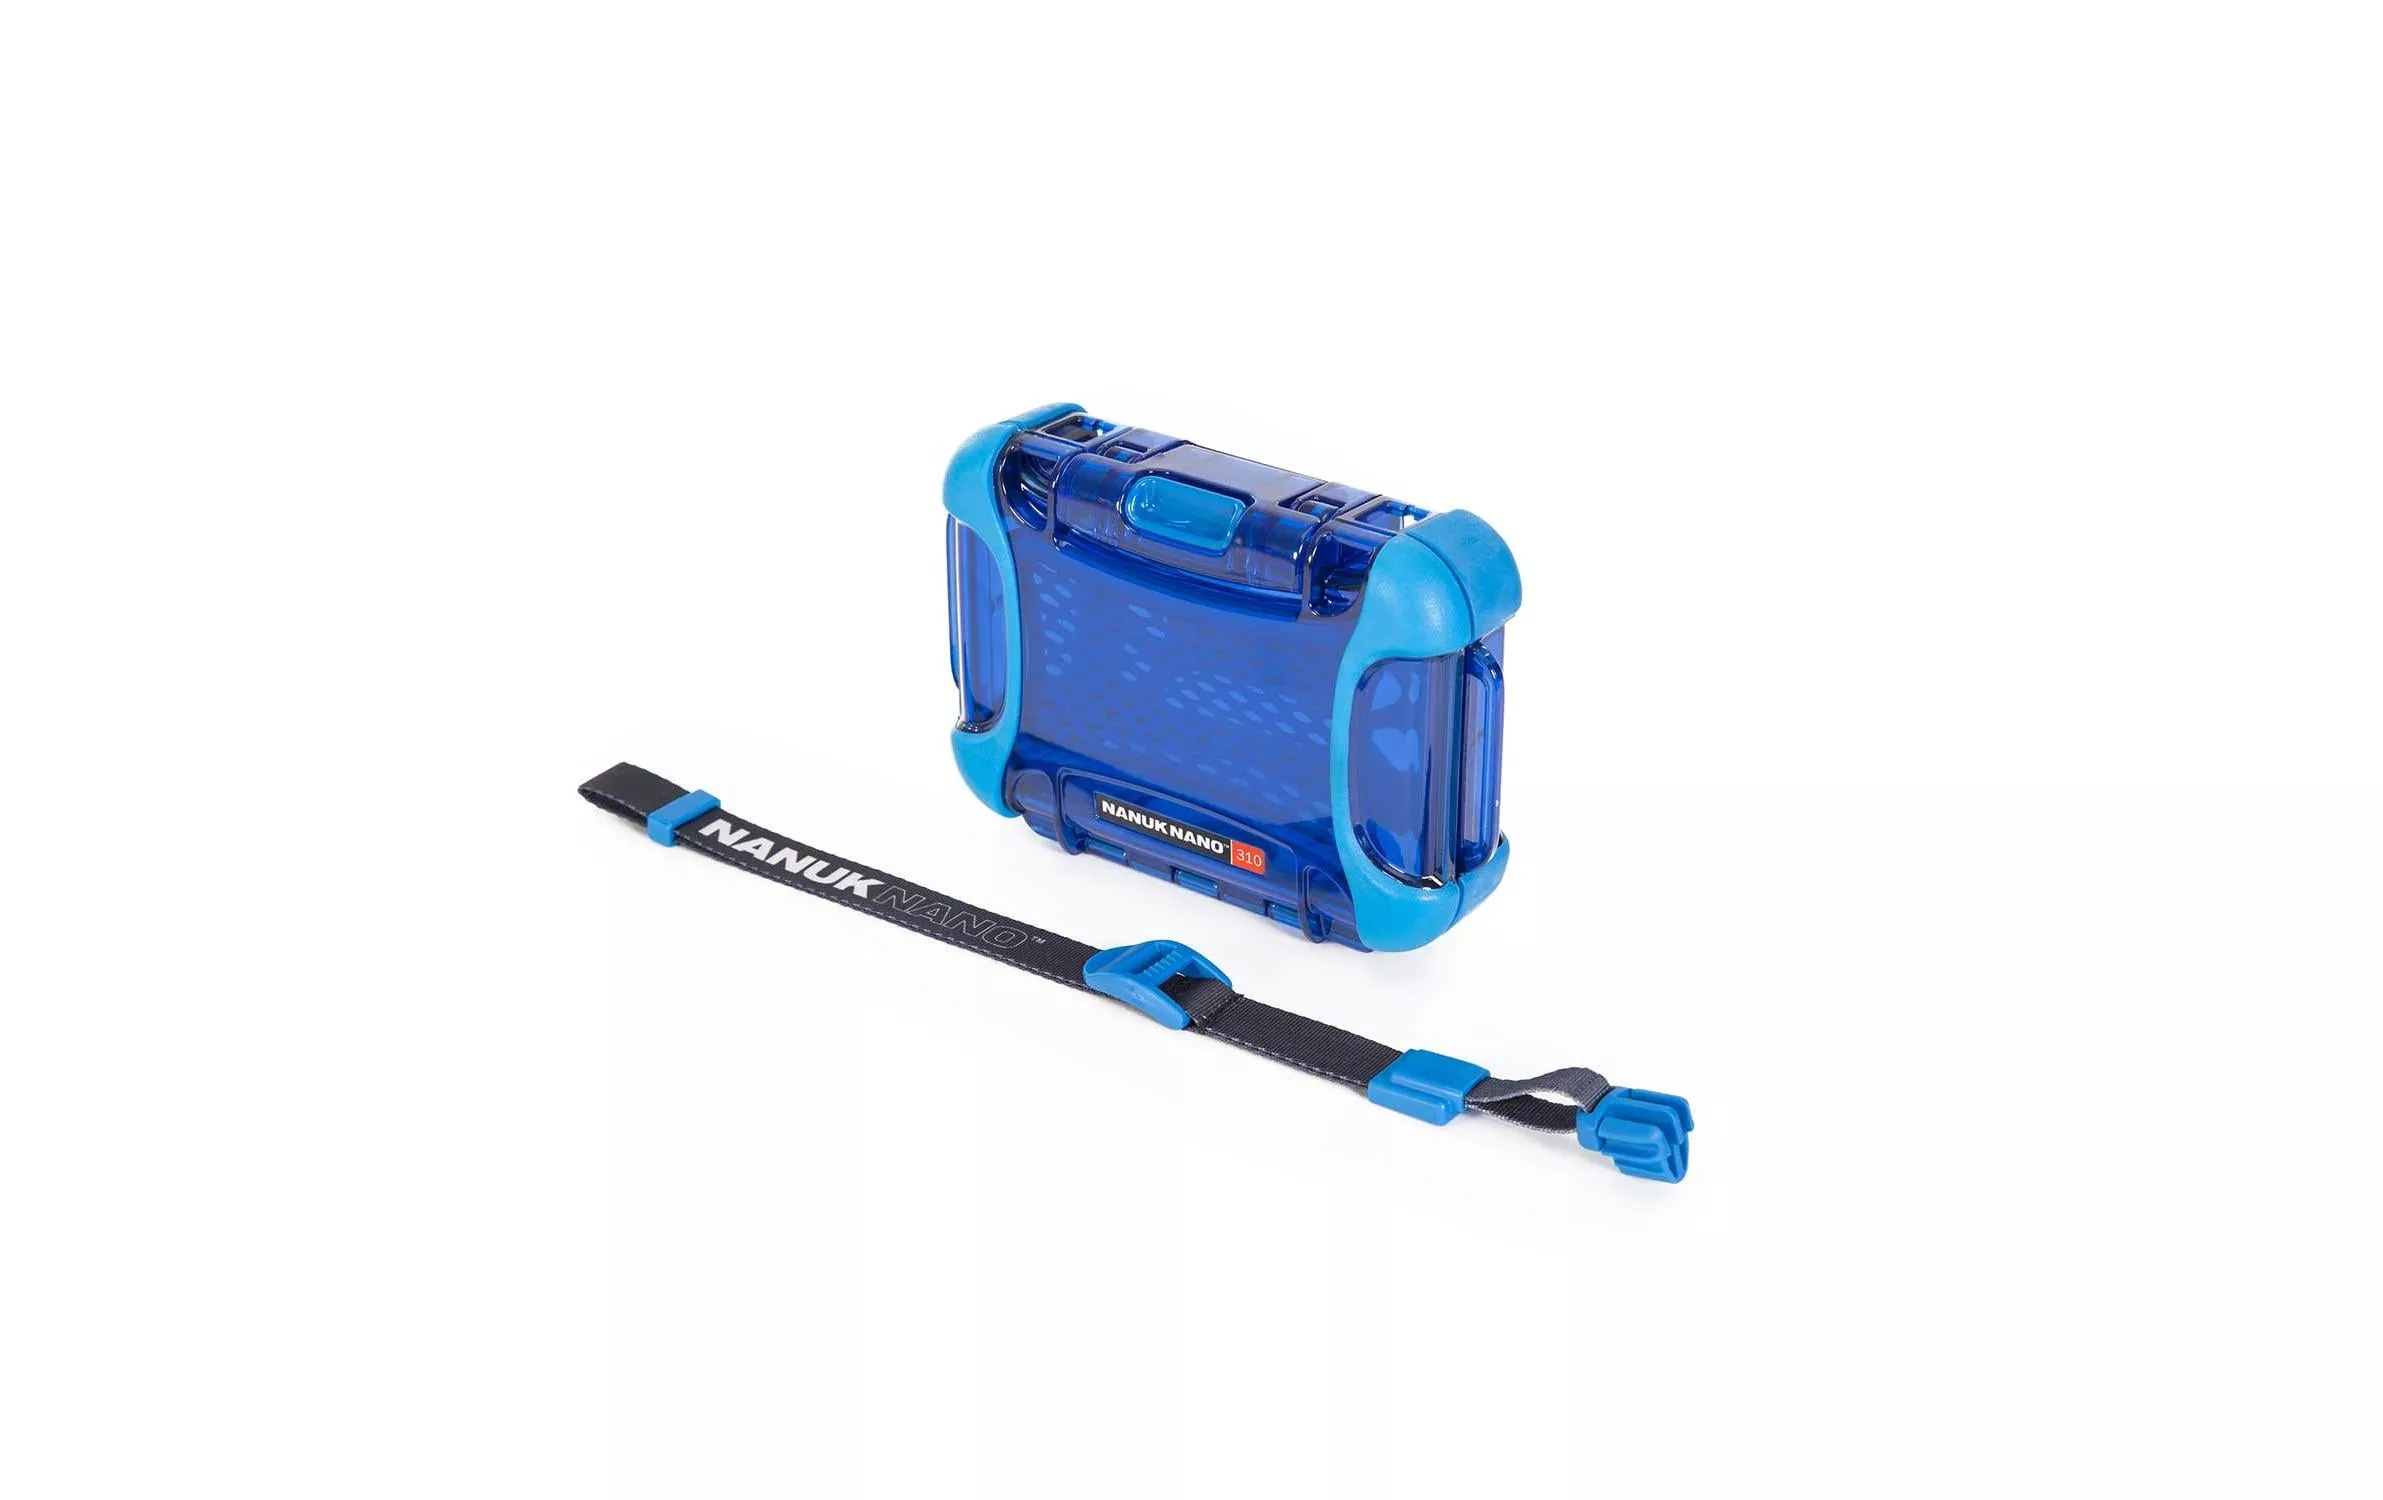 Outdoor-Koffer Nano Case 310 (131 x 77 x 28) blau Blau